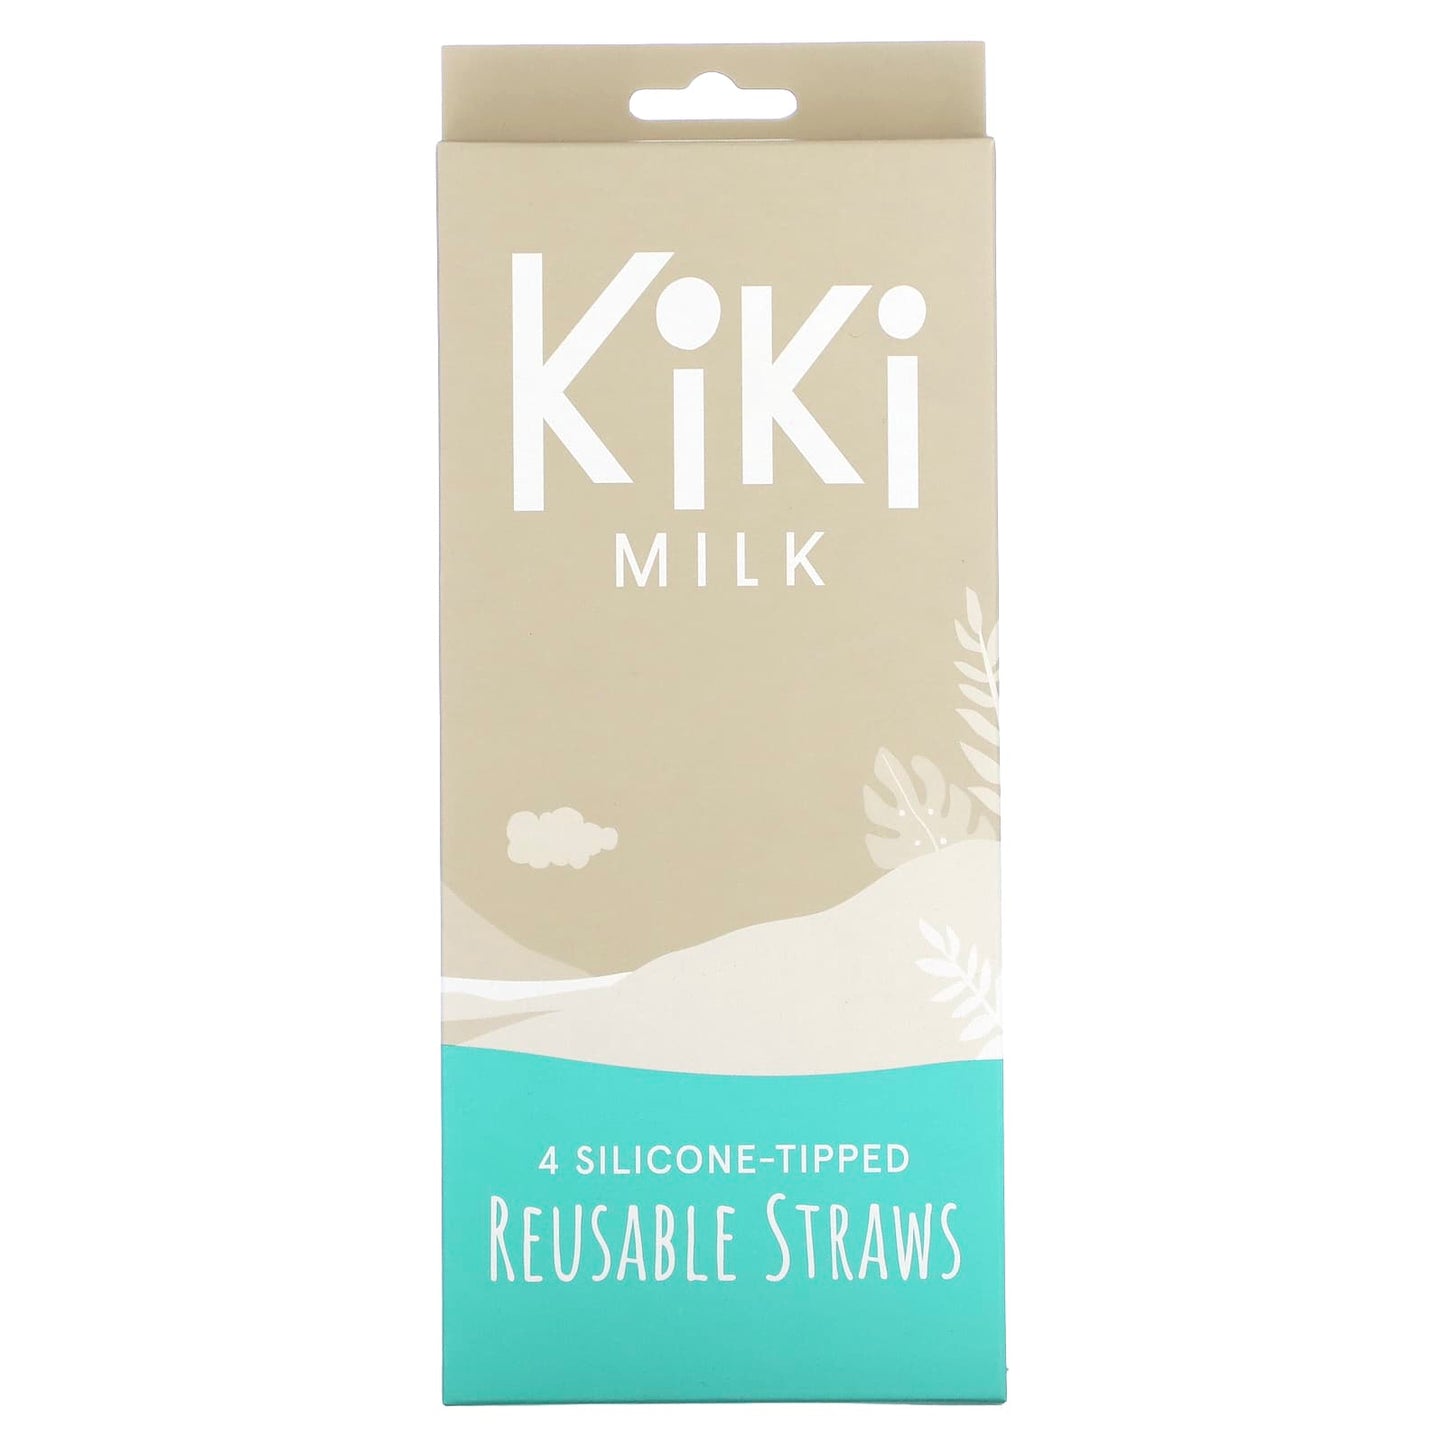 Kiki Milk, Silicone-Tipped Reusable Straws, 4 Straws